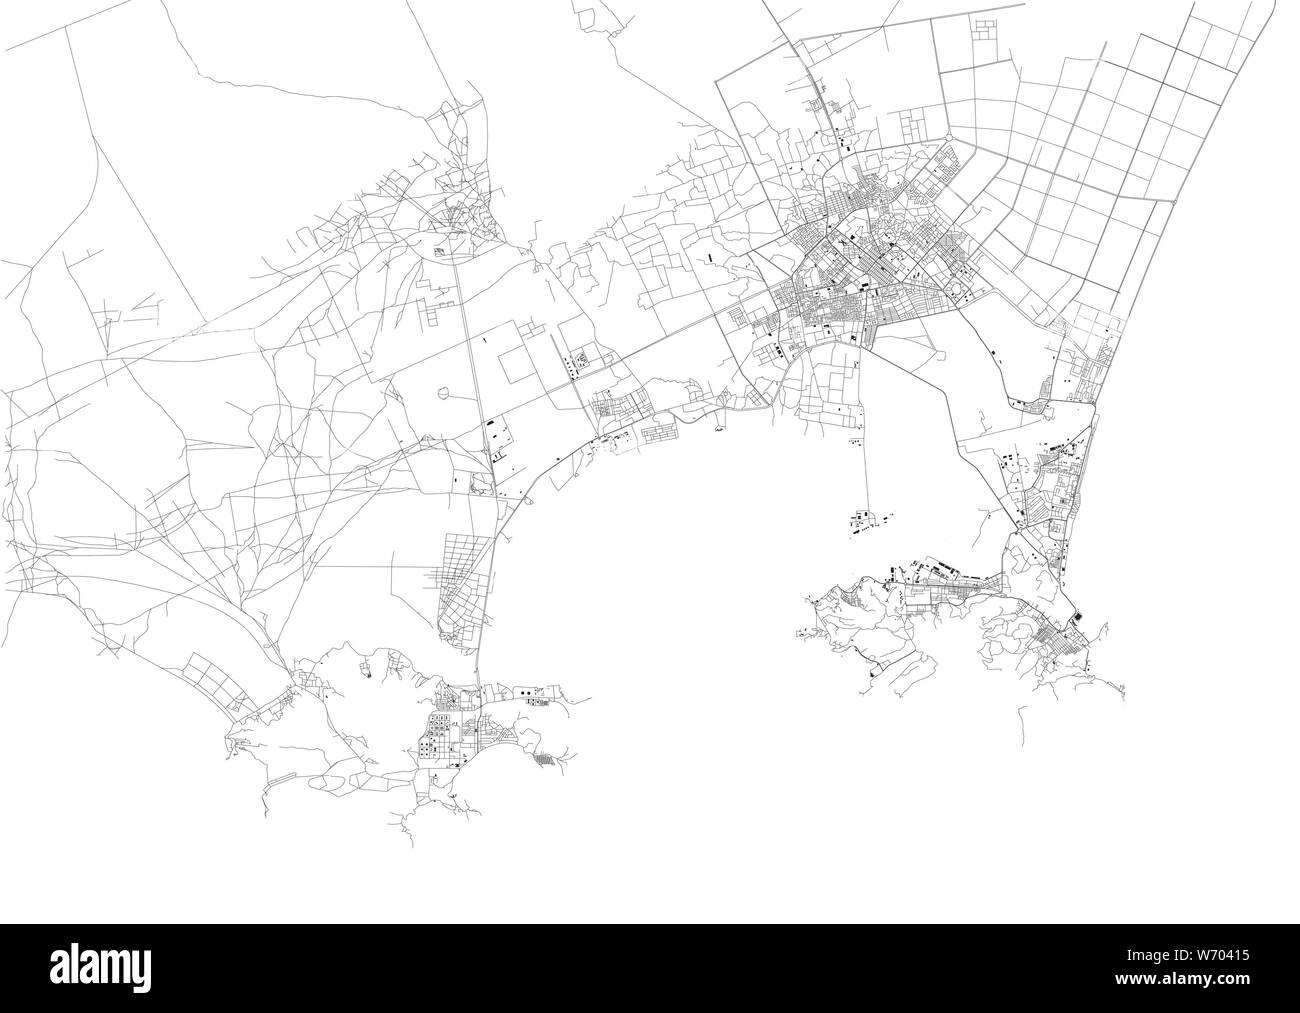 Carte Satellite d'Aden, c'est une ville portuaire du Yémen, situé à l'est par l'approche de la Mer Rouge. Carte des rues et bâtiments du centre-ville Illustration de Vecteur